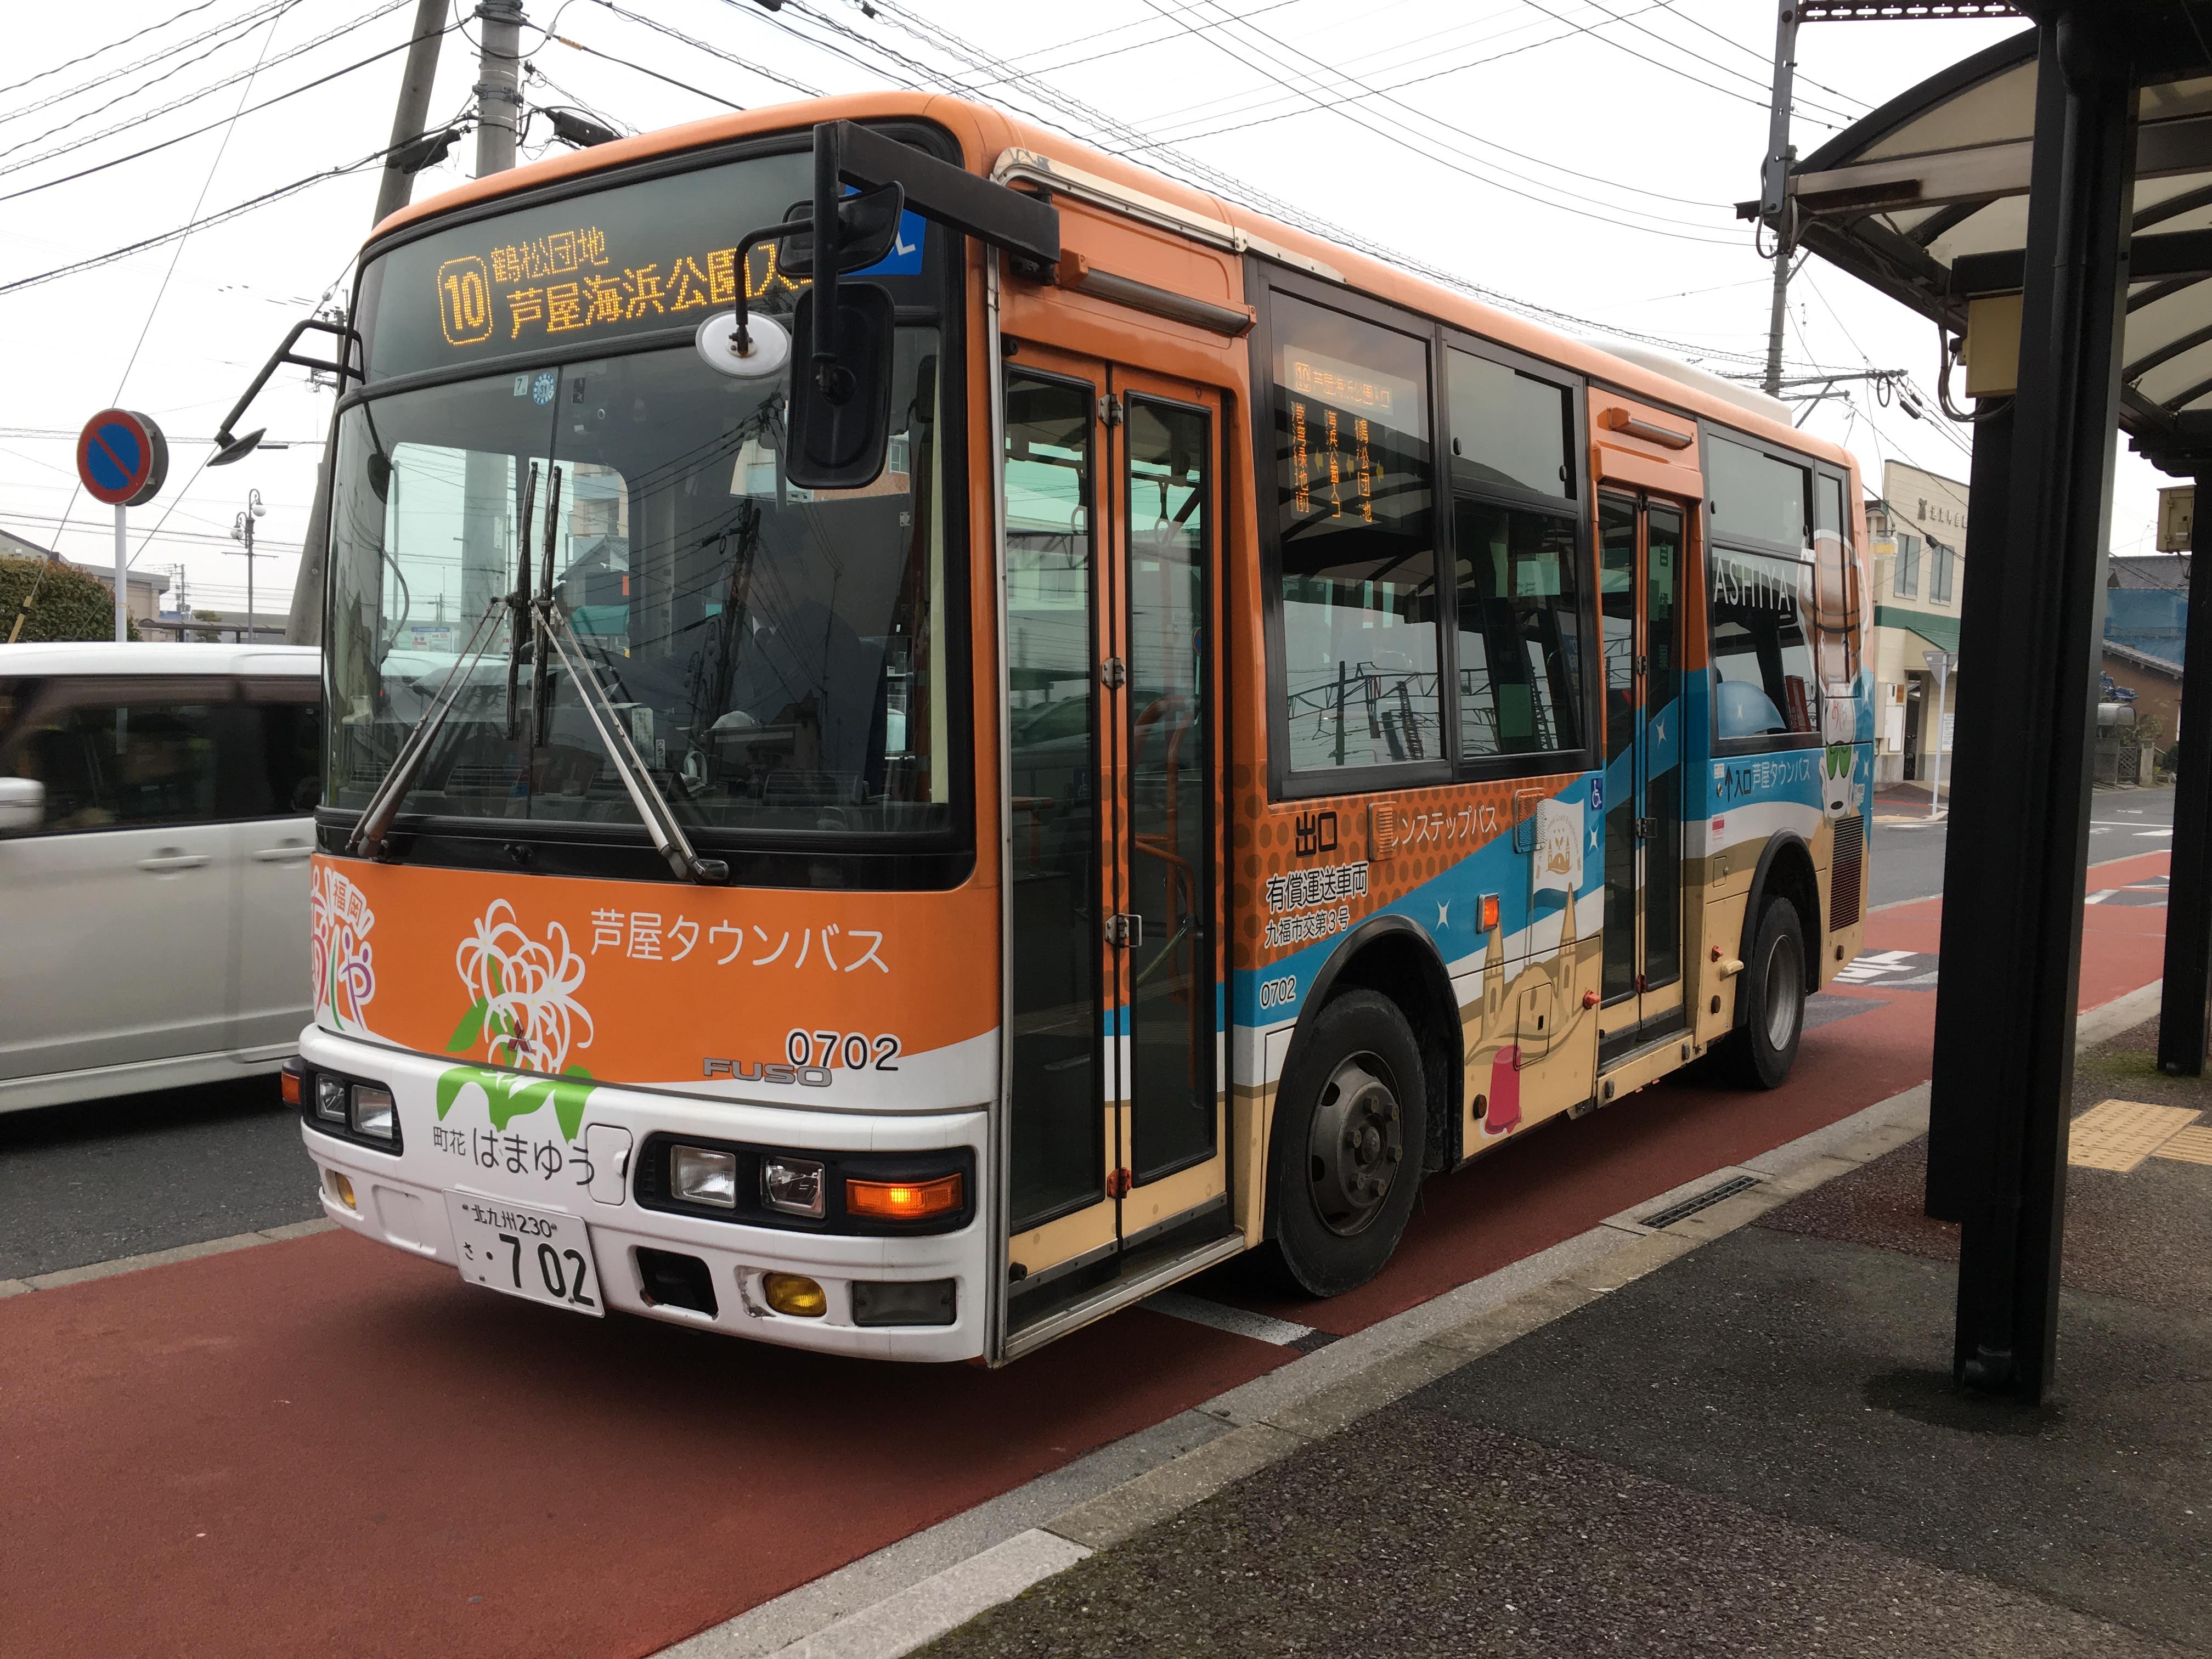 芦屋タウンバス 車両一覧表 - KR かっぱ鉄道